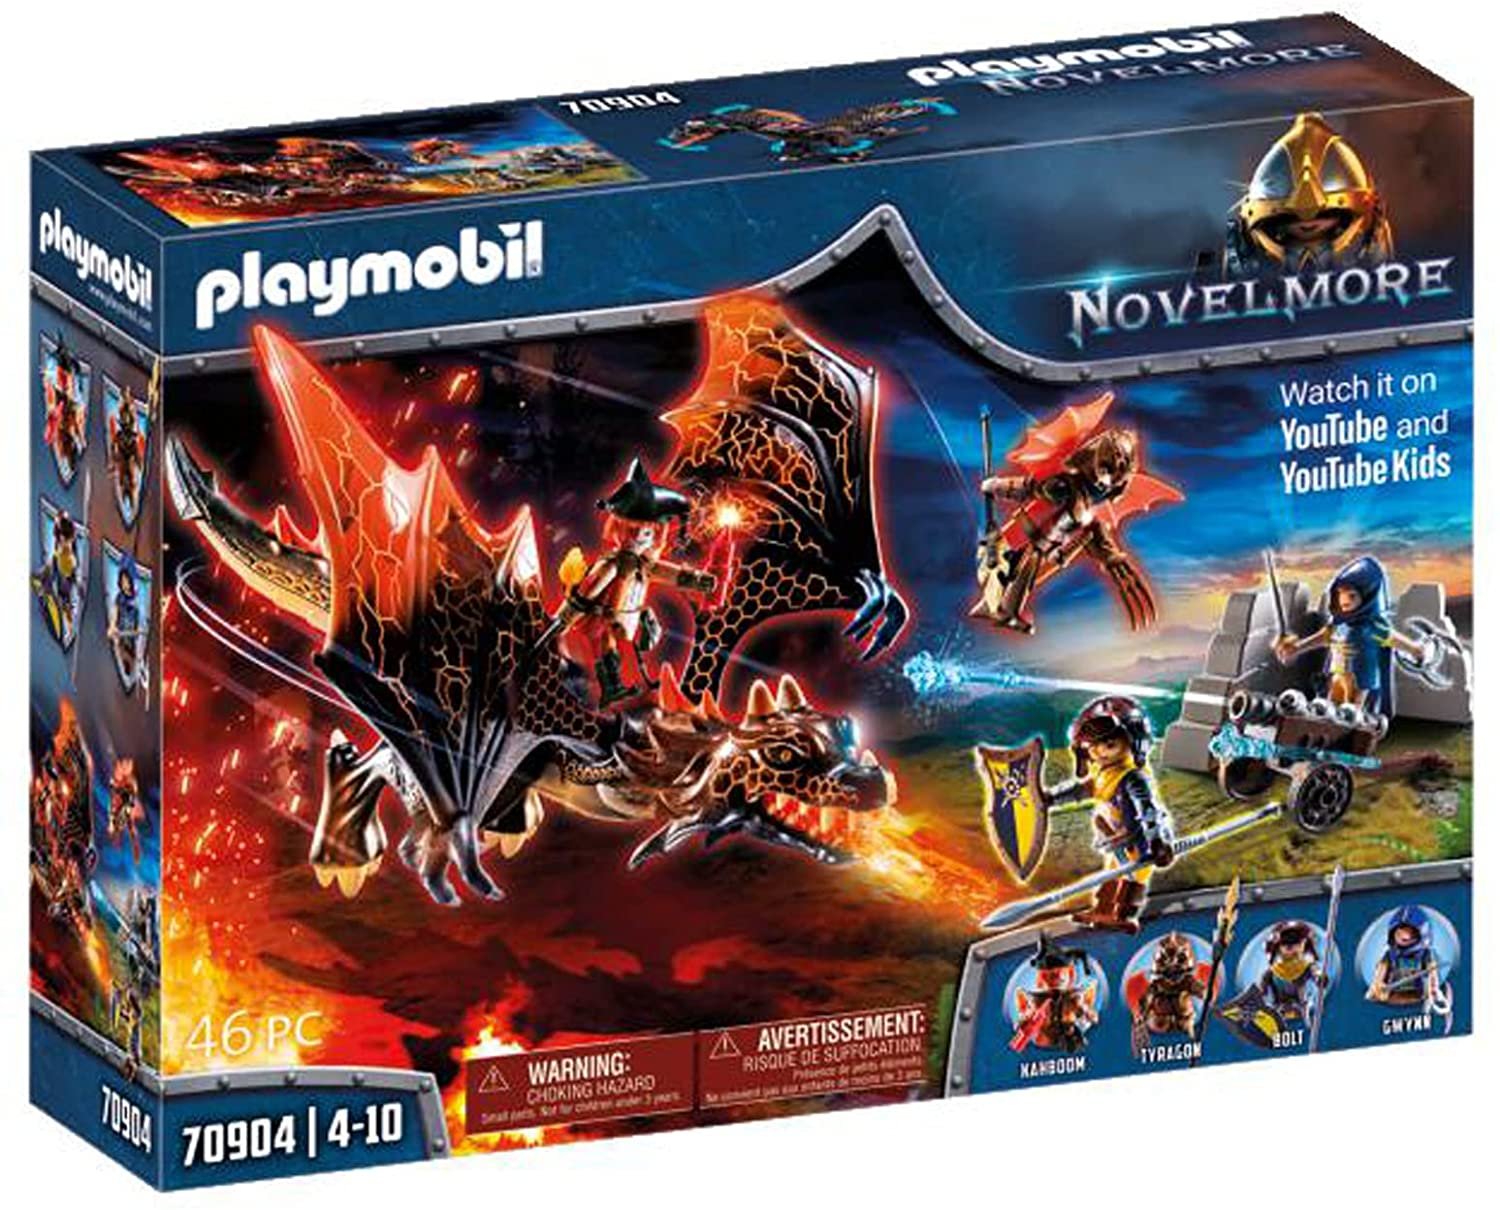 Playmobil 70904 Novelmore Dračí útok